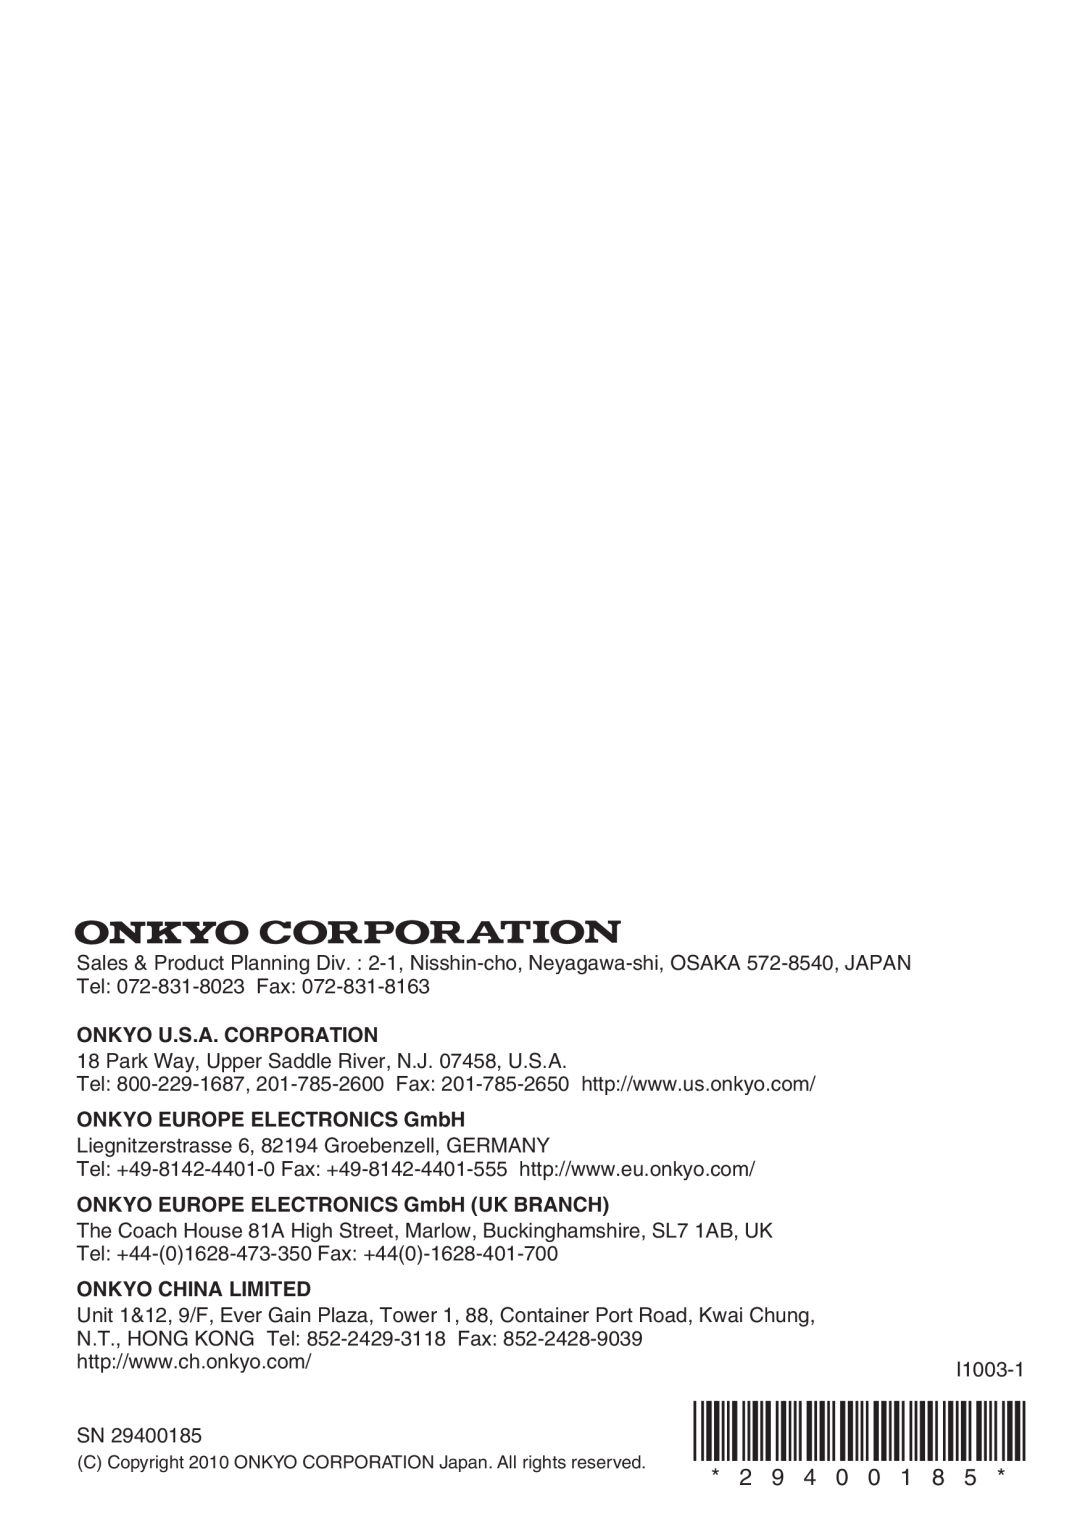 Onkyo HTX-22HDX 2 9, Onkyo U.S.A. Corporation, ONKYO EUROPE ELECTRONICS GmbH UK BRANCH, Onkyo China Limited 